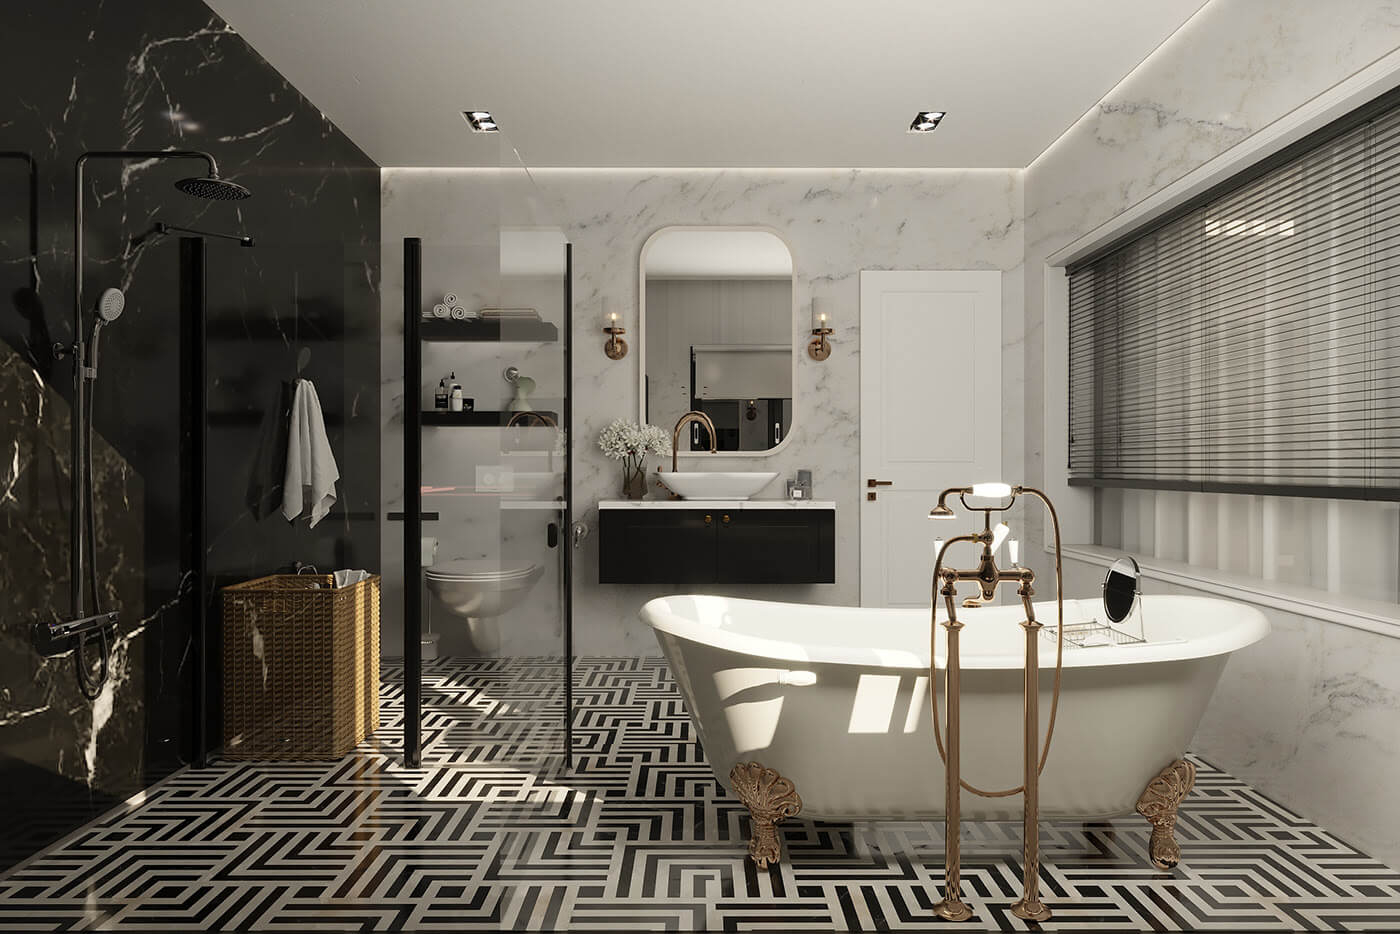 Phòng tắm với tông trắng đen chủ đạo kèm nội thất đá hoa cương và mạ vàng làm điểm nhấn